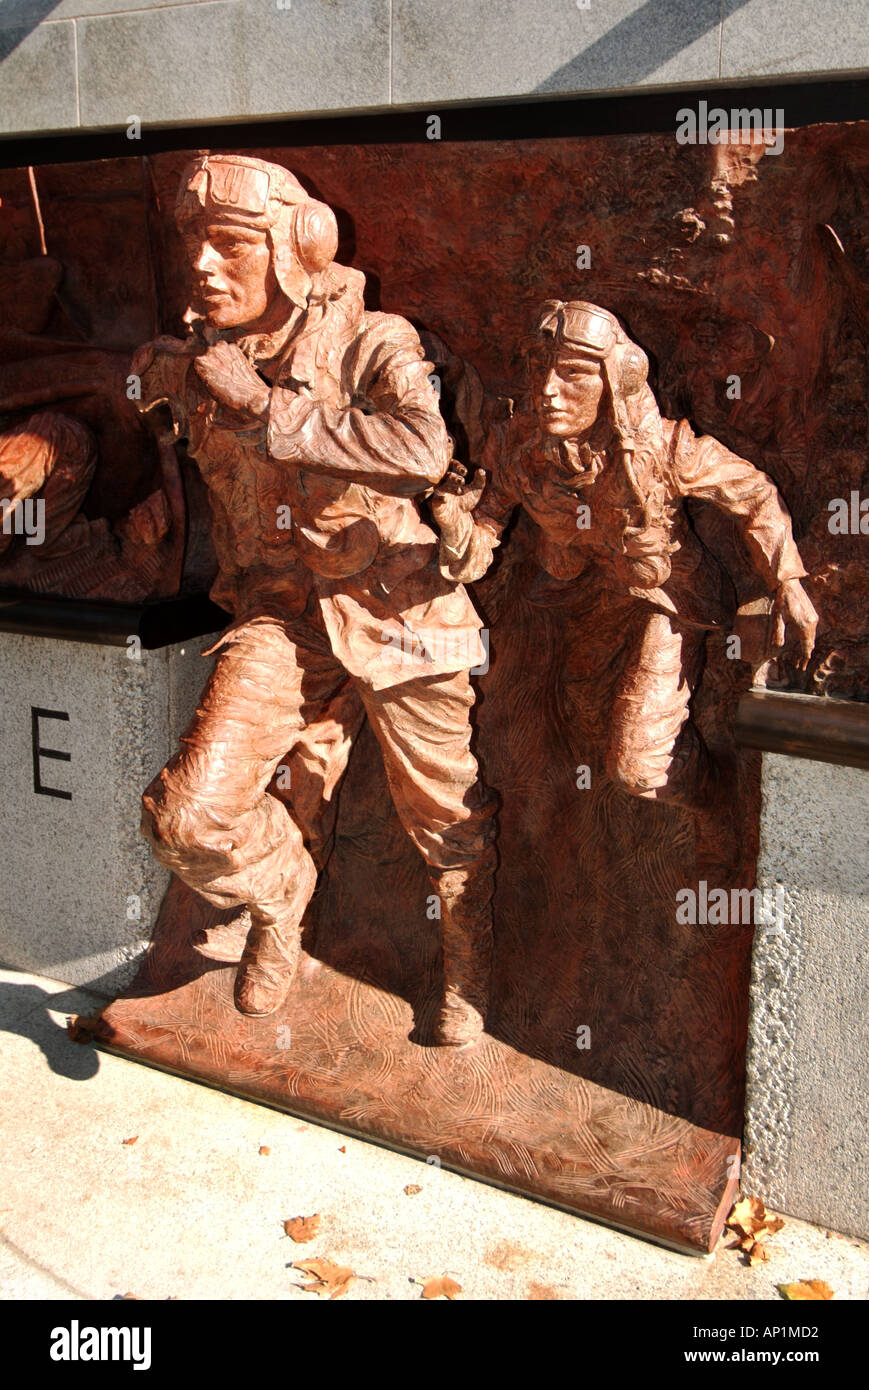 La bataille d'Angleterre, Seconde Guerre mondiale 2 memorial monument en bronze sculpture & par Paul jour Victoria Embankment Thames Westminster London England UK Banque D'Images